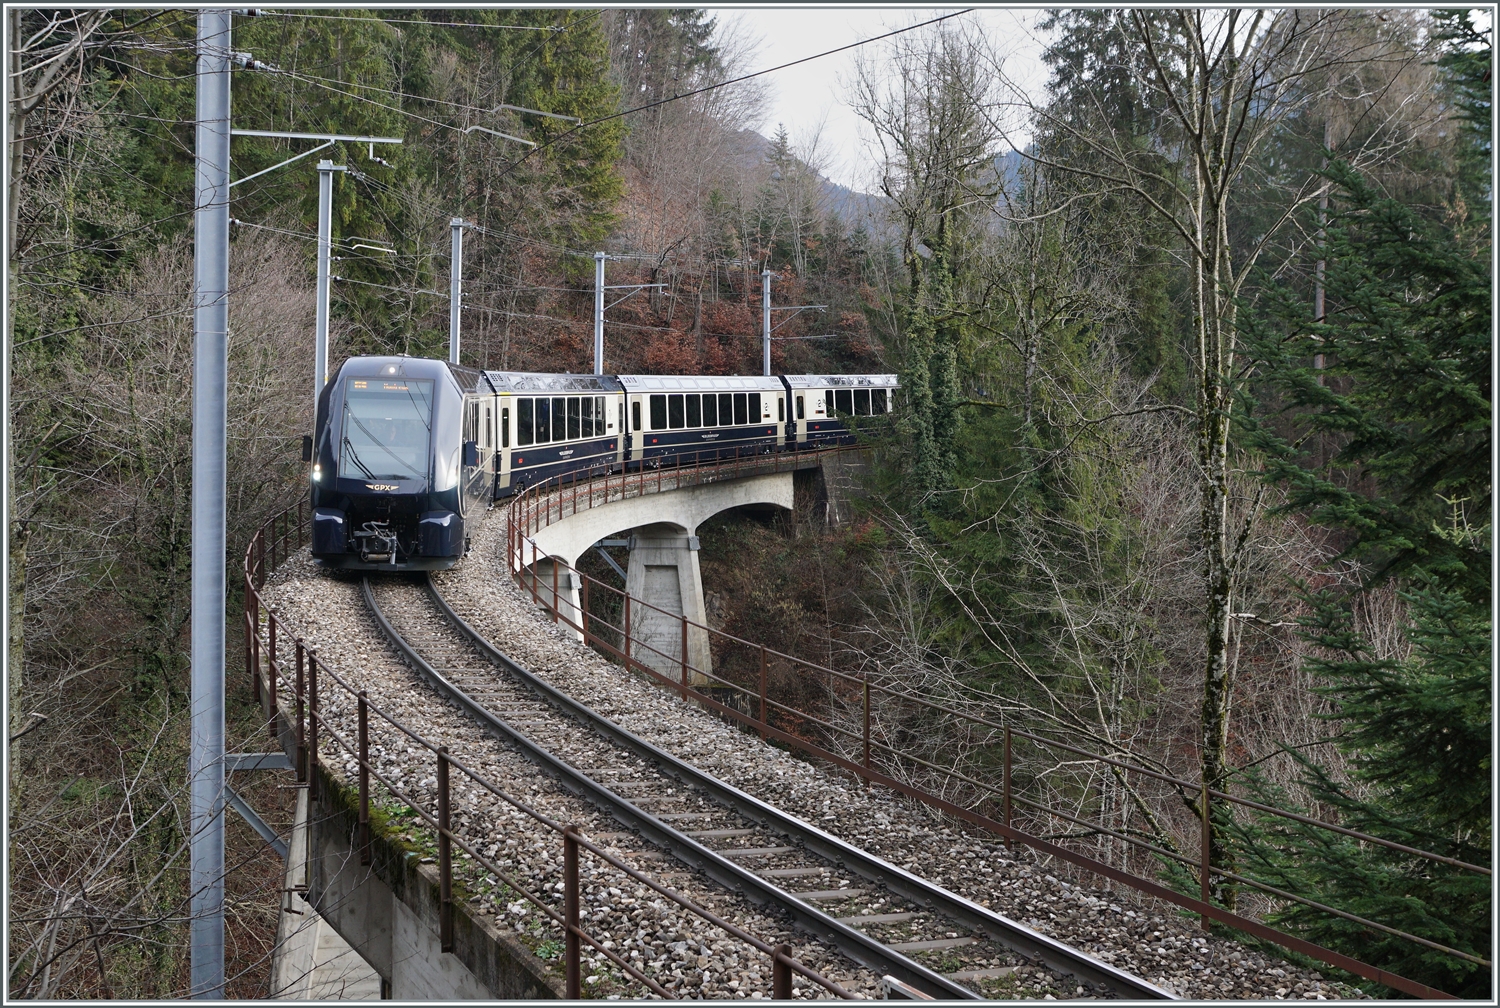 Der GoldenPass Express 4065 ist von Interlaken nach Montreux unterwegs und fährt zuwischen Les Avants und Sendy-Sollard über die 93 Meter lange Pont Gardiol, welche den Bois des Chenaux überbrückt. 

4. Januar 2023